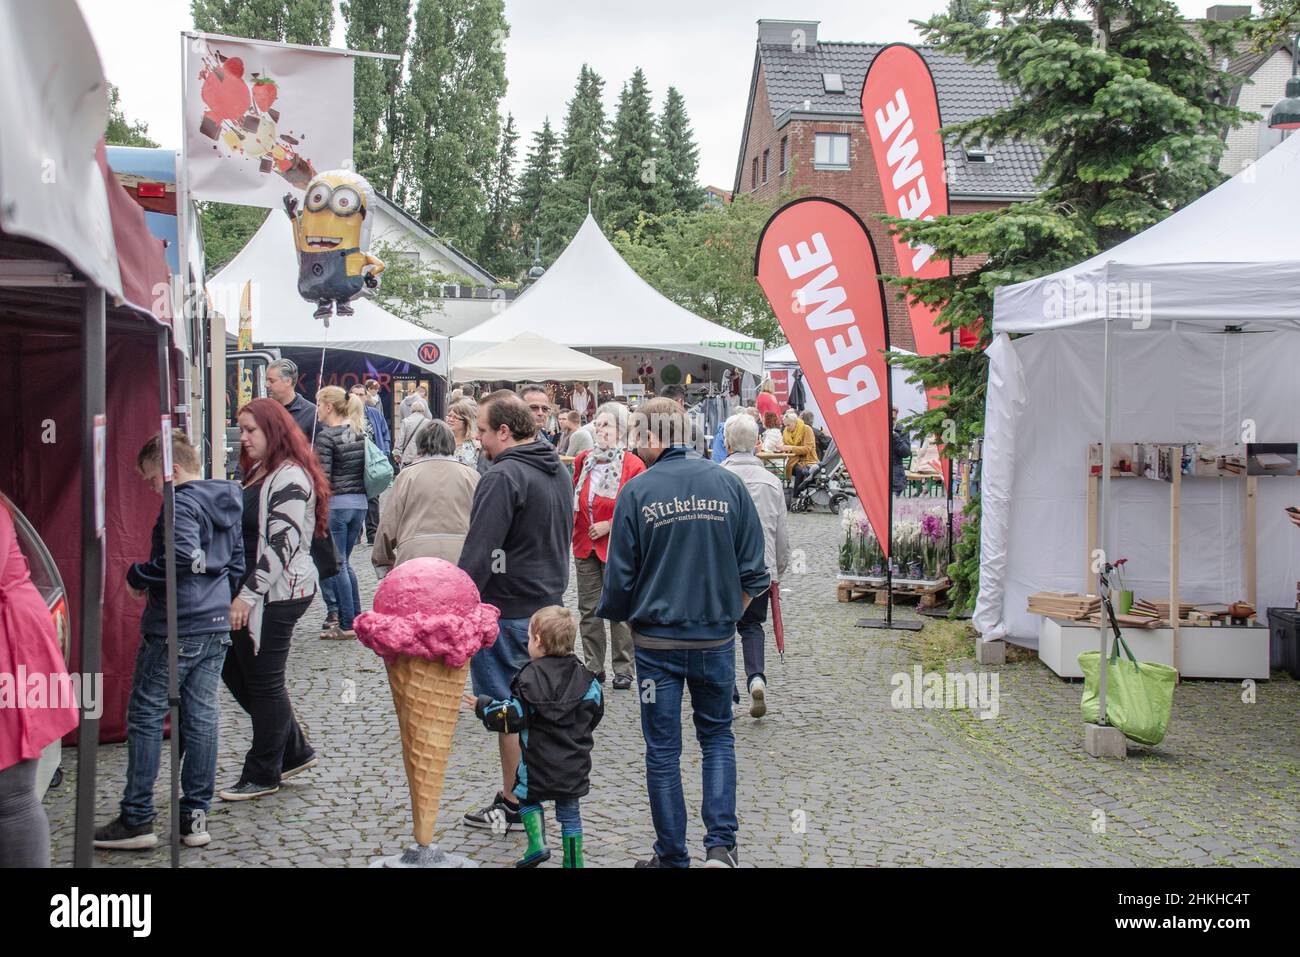 Aachen June 2017: The citizens' festival in Aachen Eilendorf Bürgerfest Stock Photo